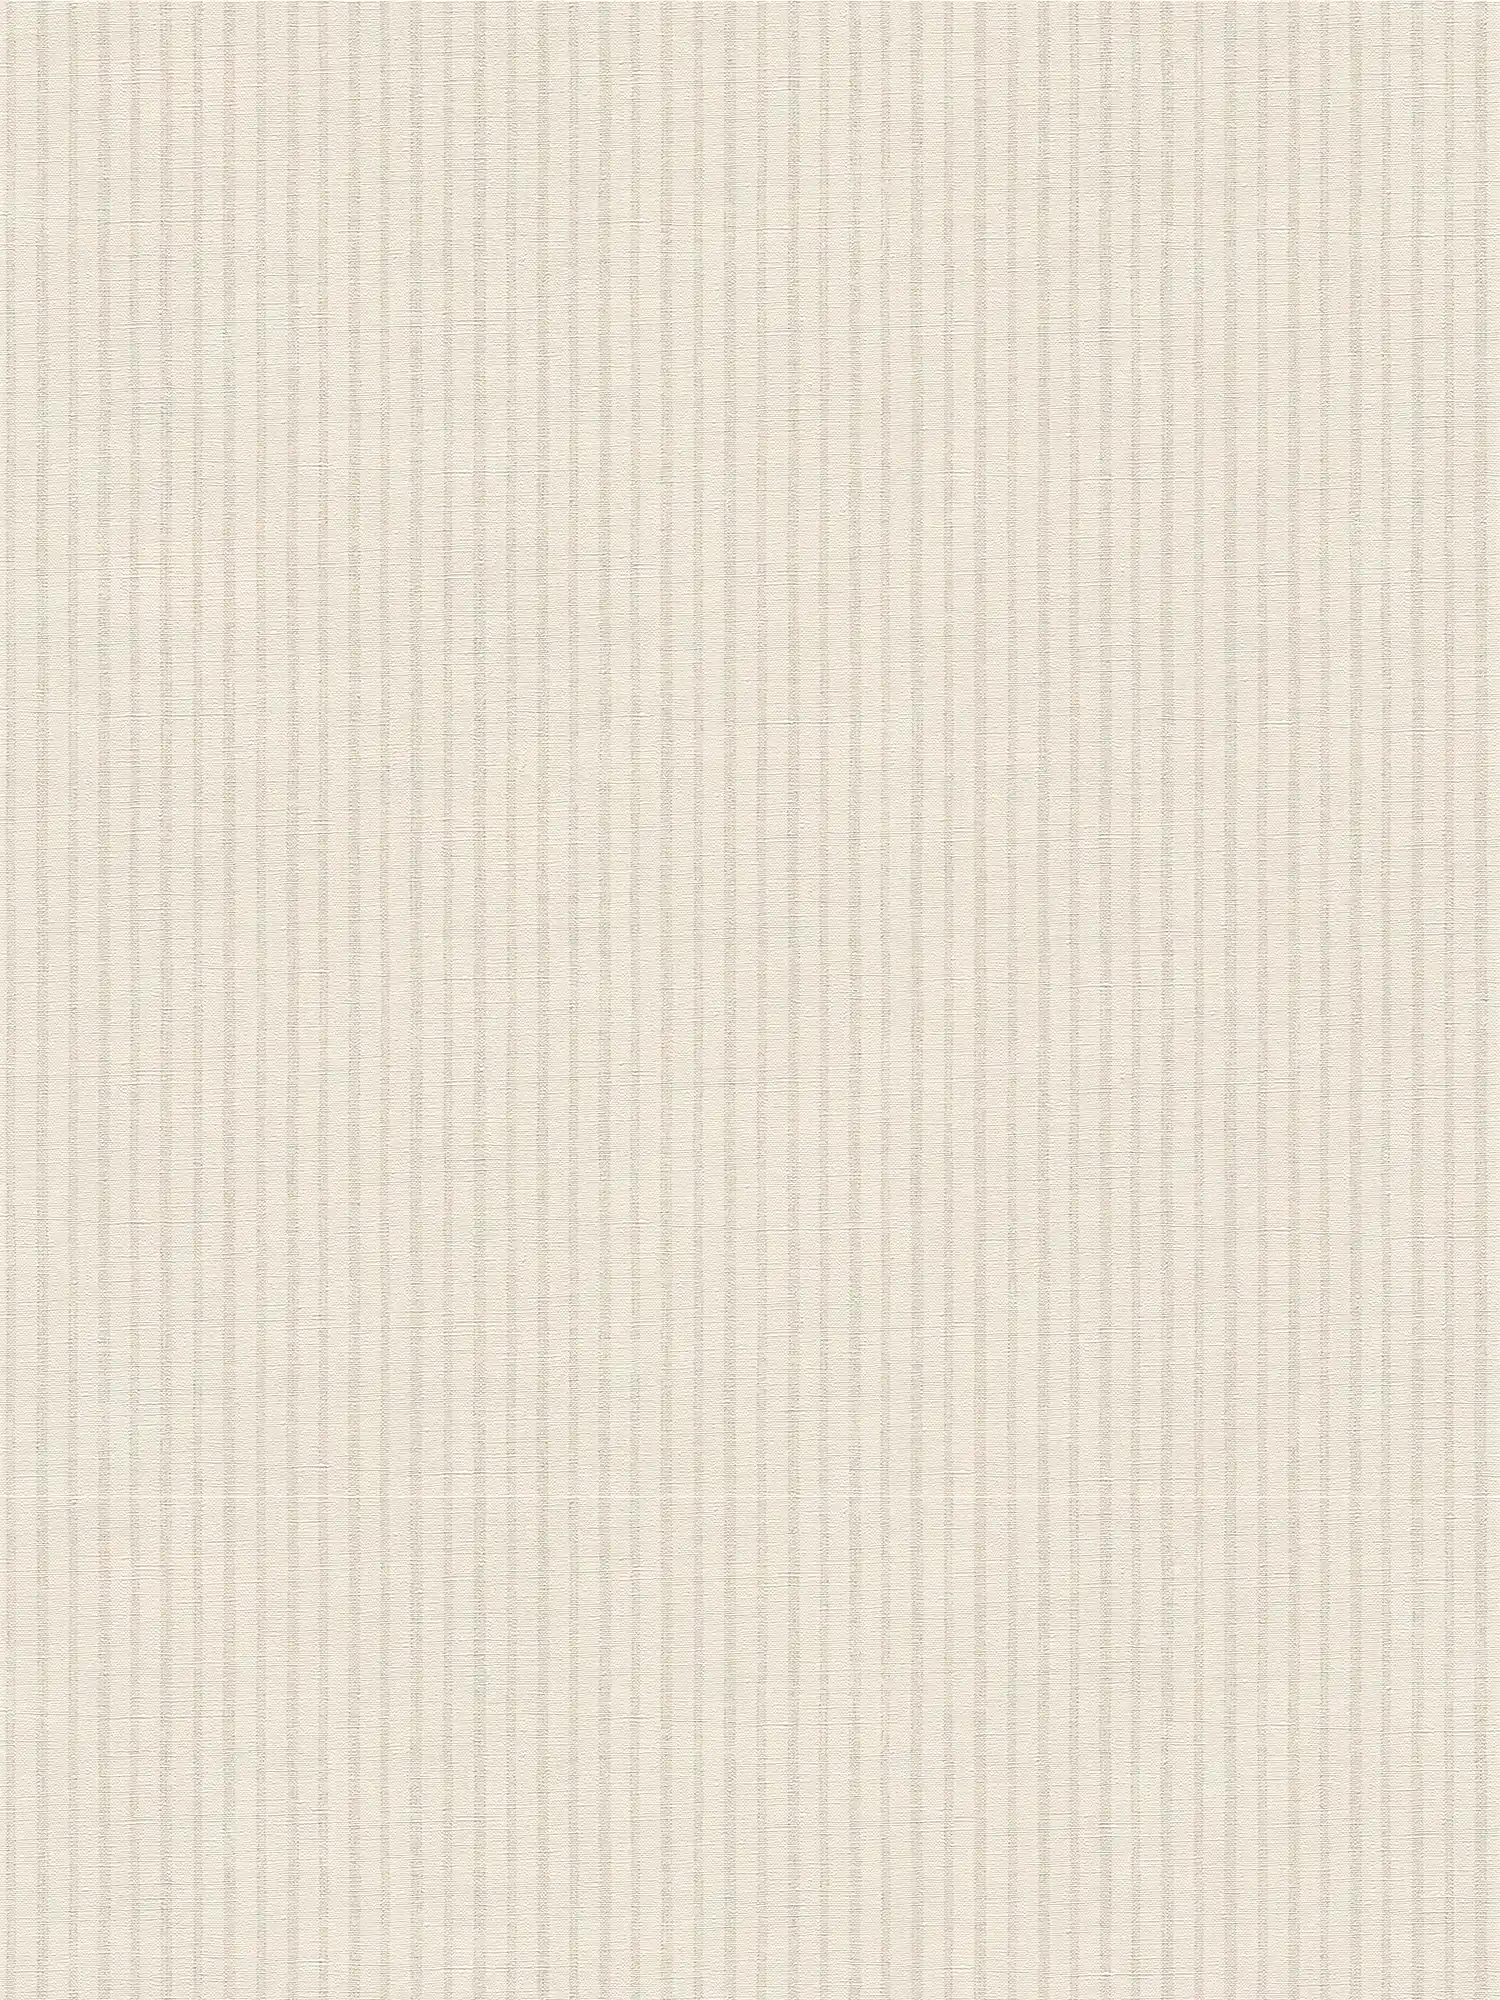 Papel pintado no tejido con rayas sutiles en estilo campestre - blanco, gris
